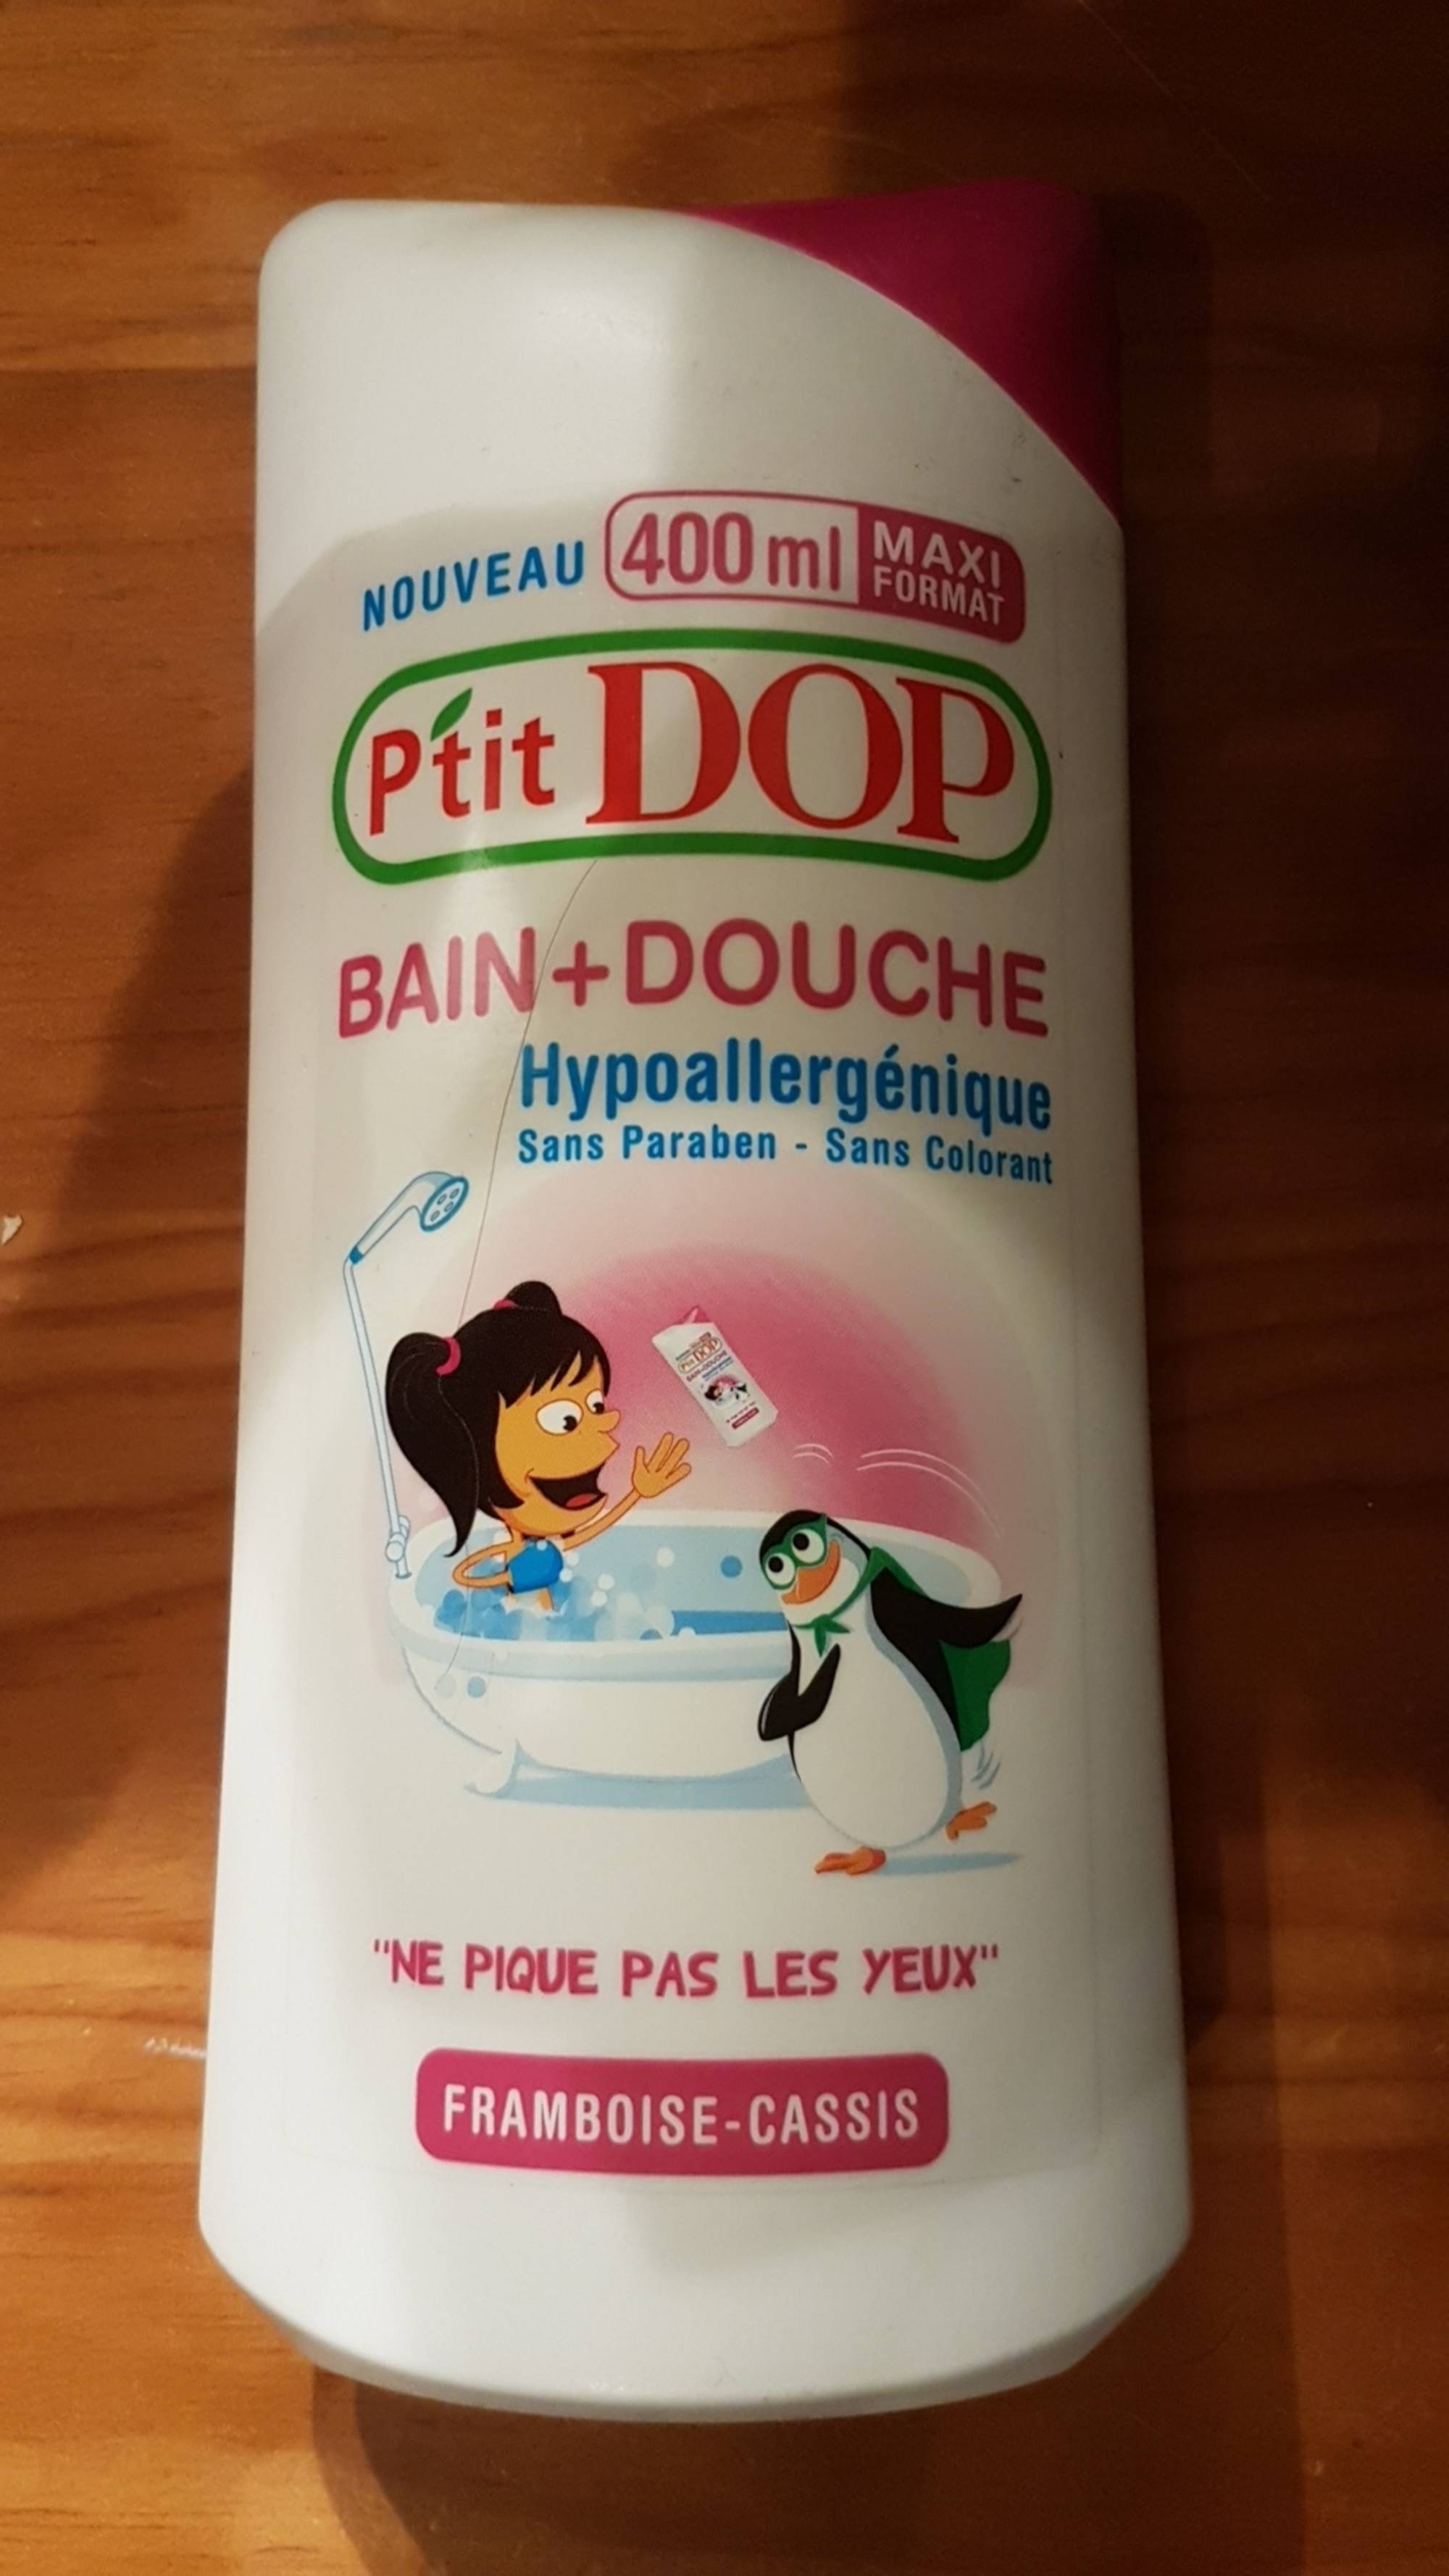 P'TIT DOP - Bain + douche hypoallergénique